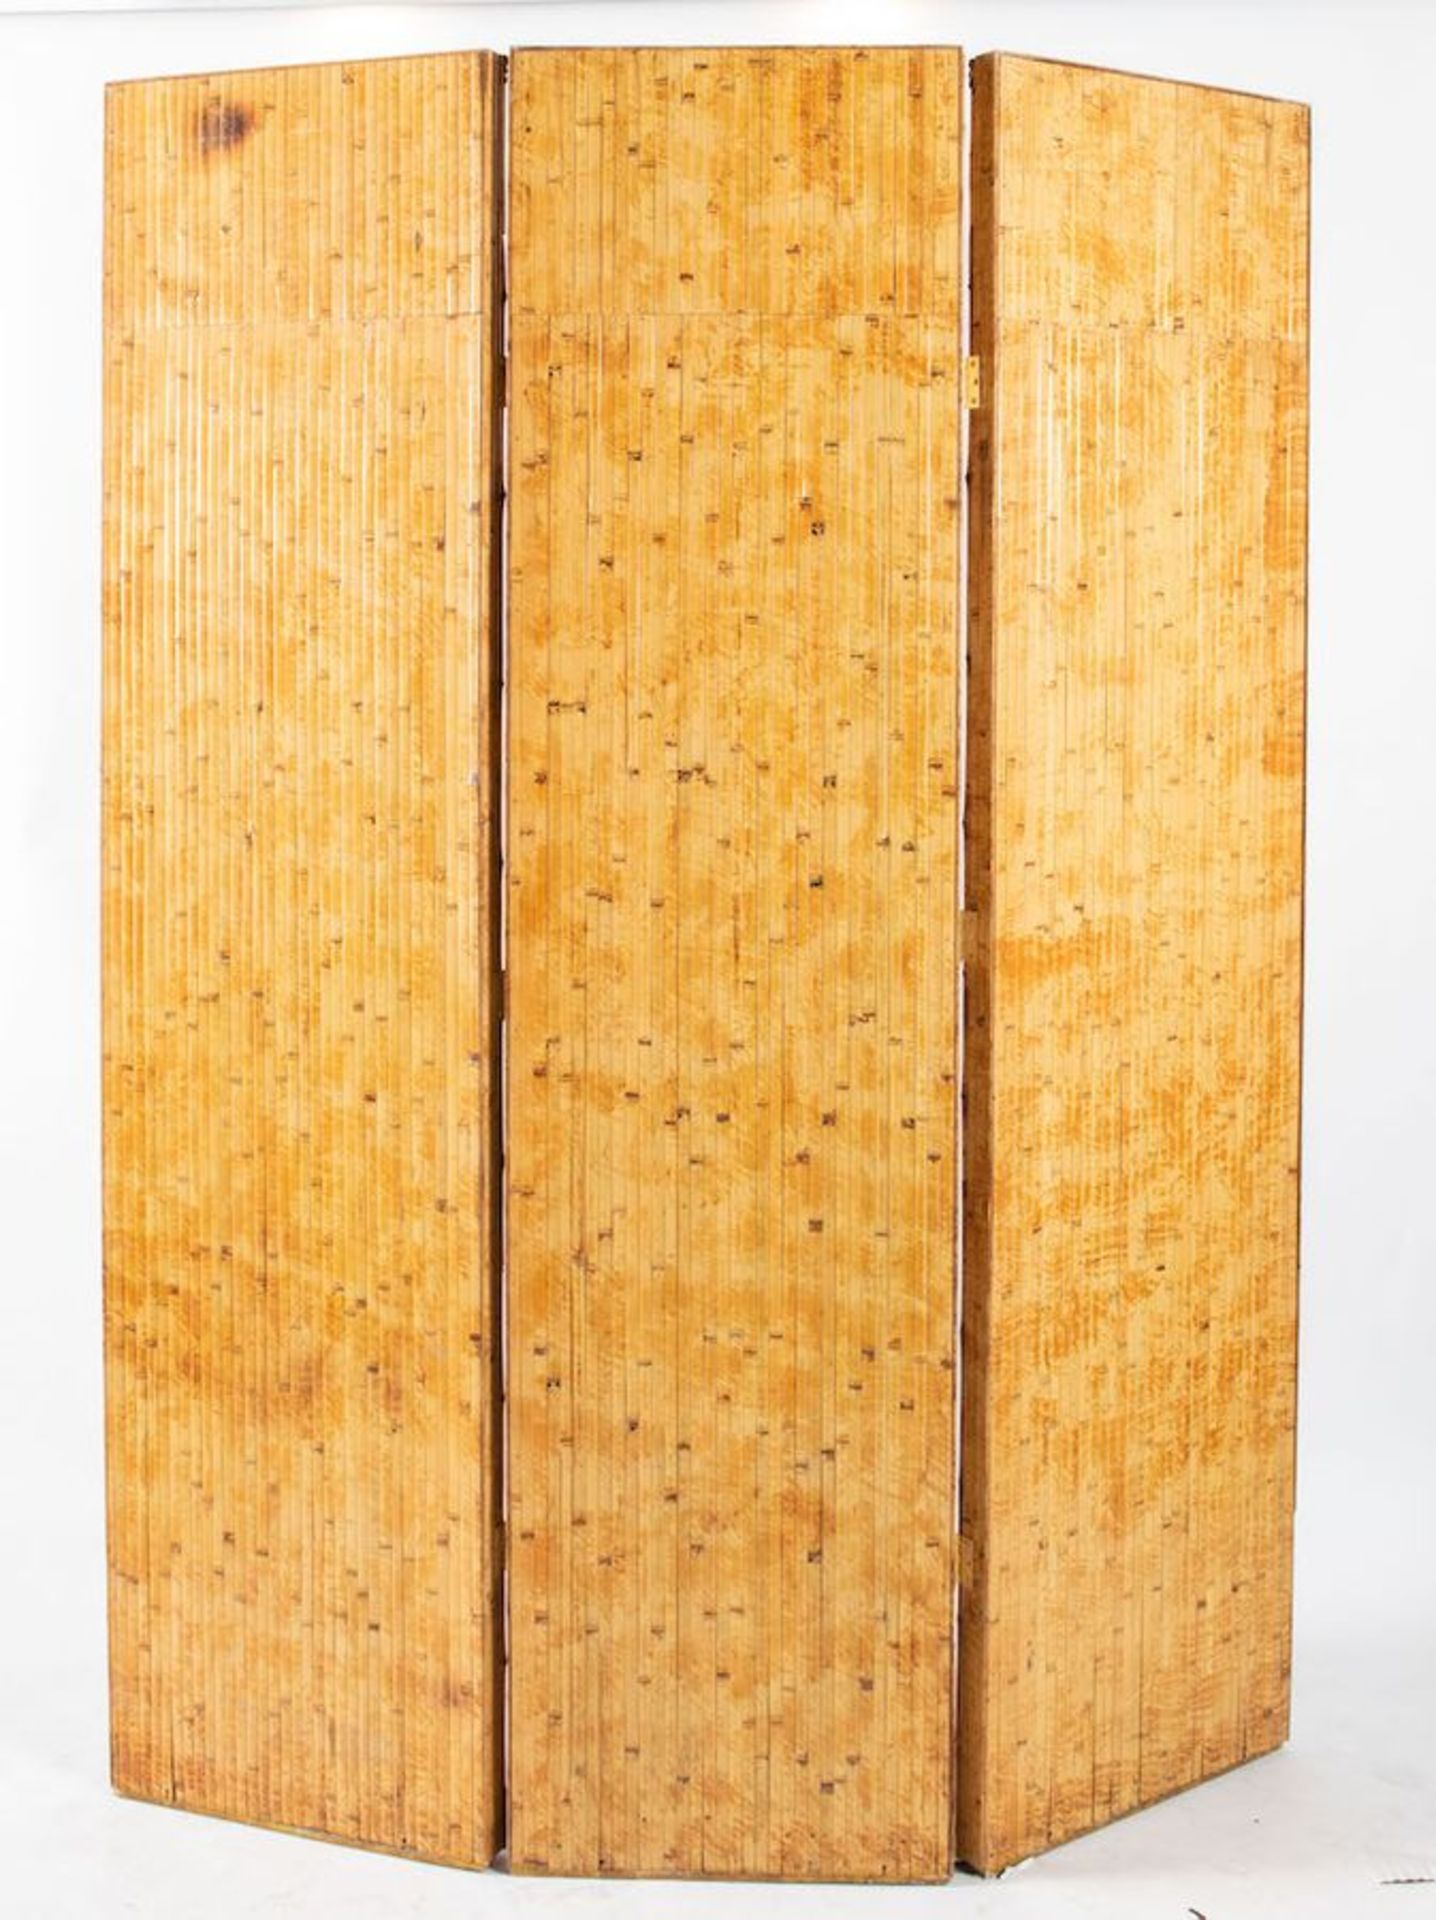 VIVAI DEL SUD, attr. Paravento in bamboo e canna d’india con specchi. Prod. Italia, 1970 ca. Cm 215x - Image 2 of 2